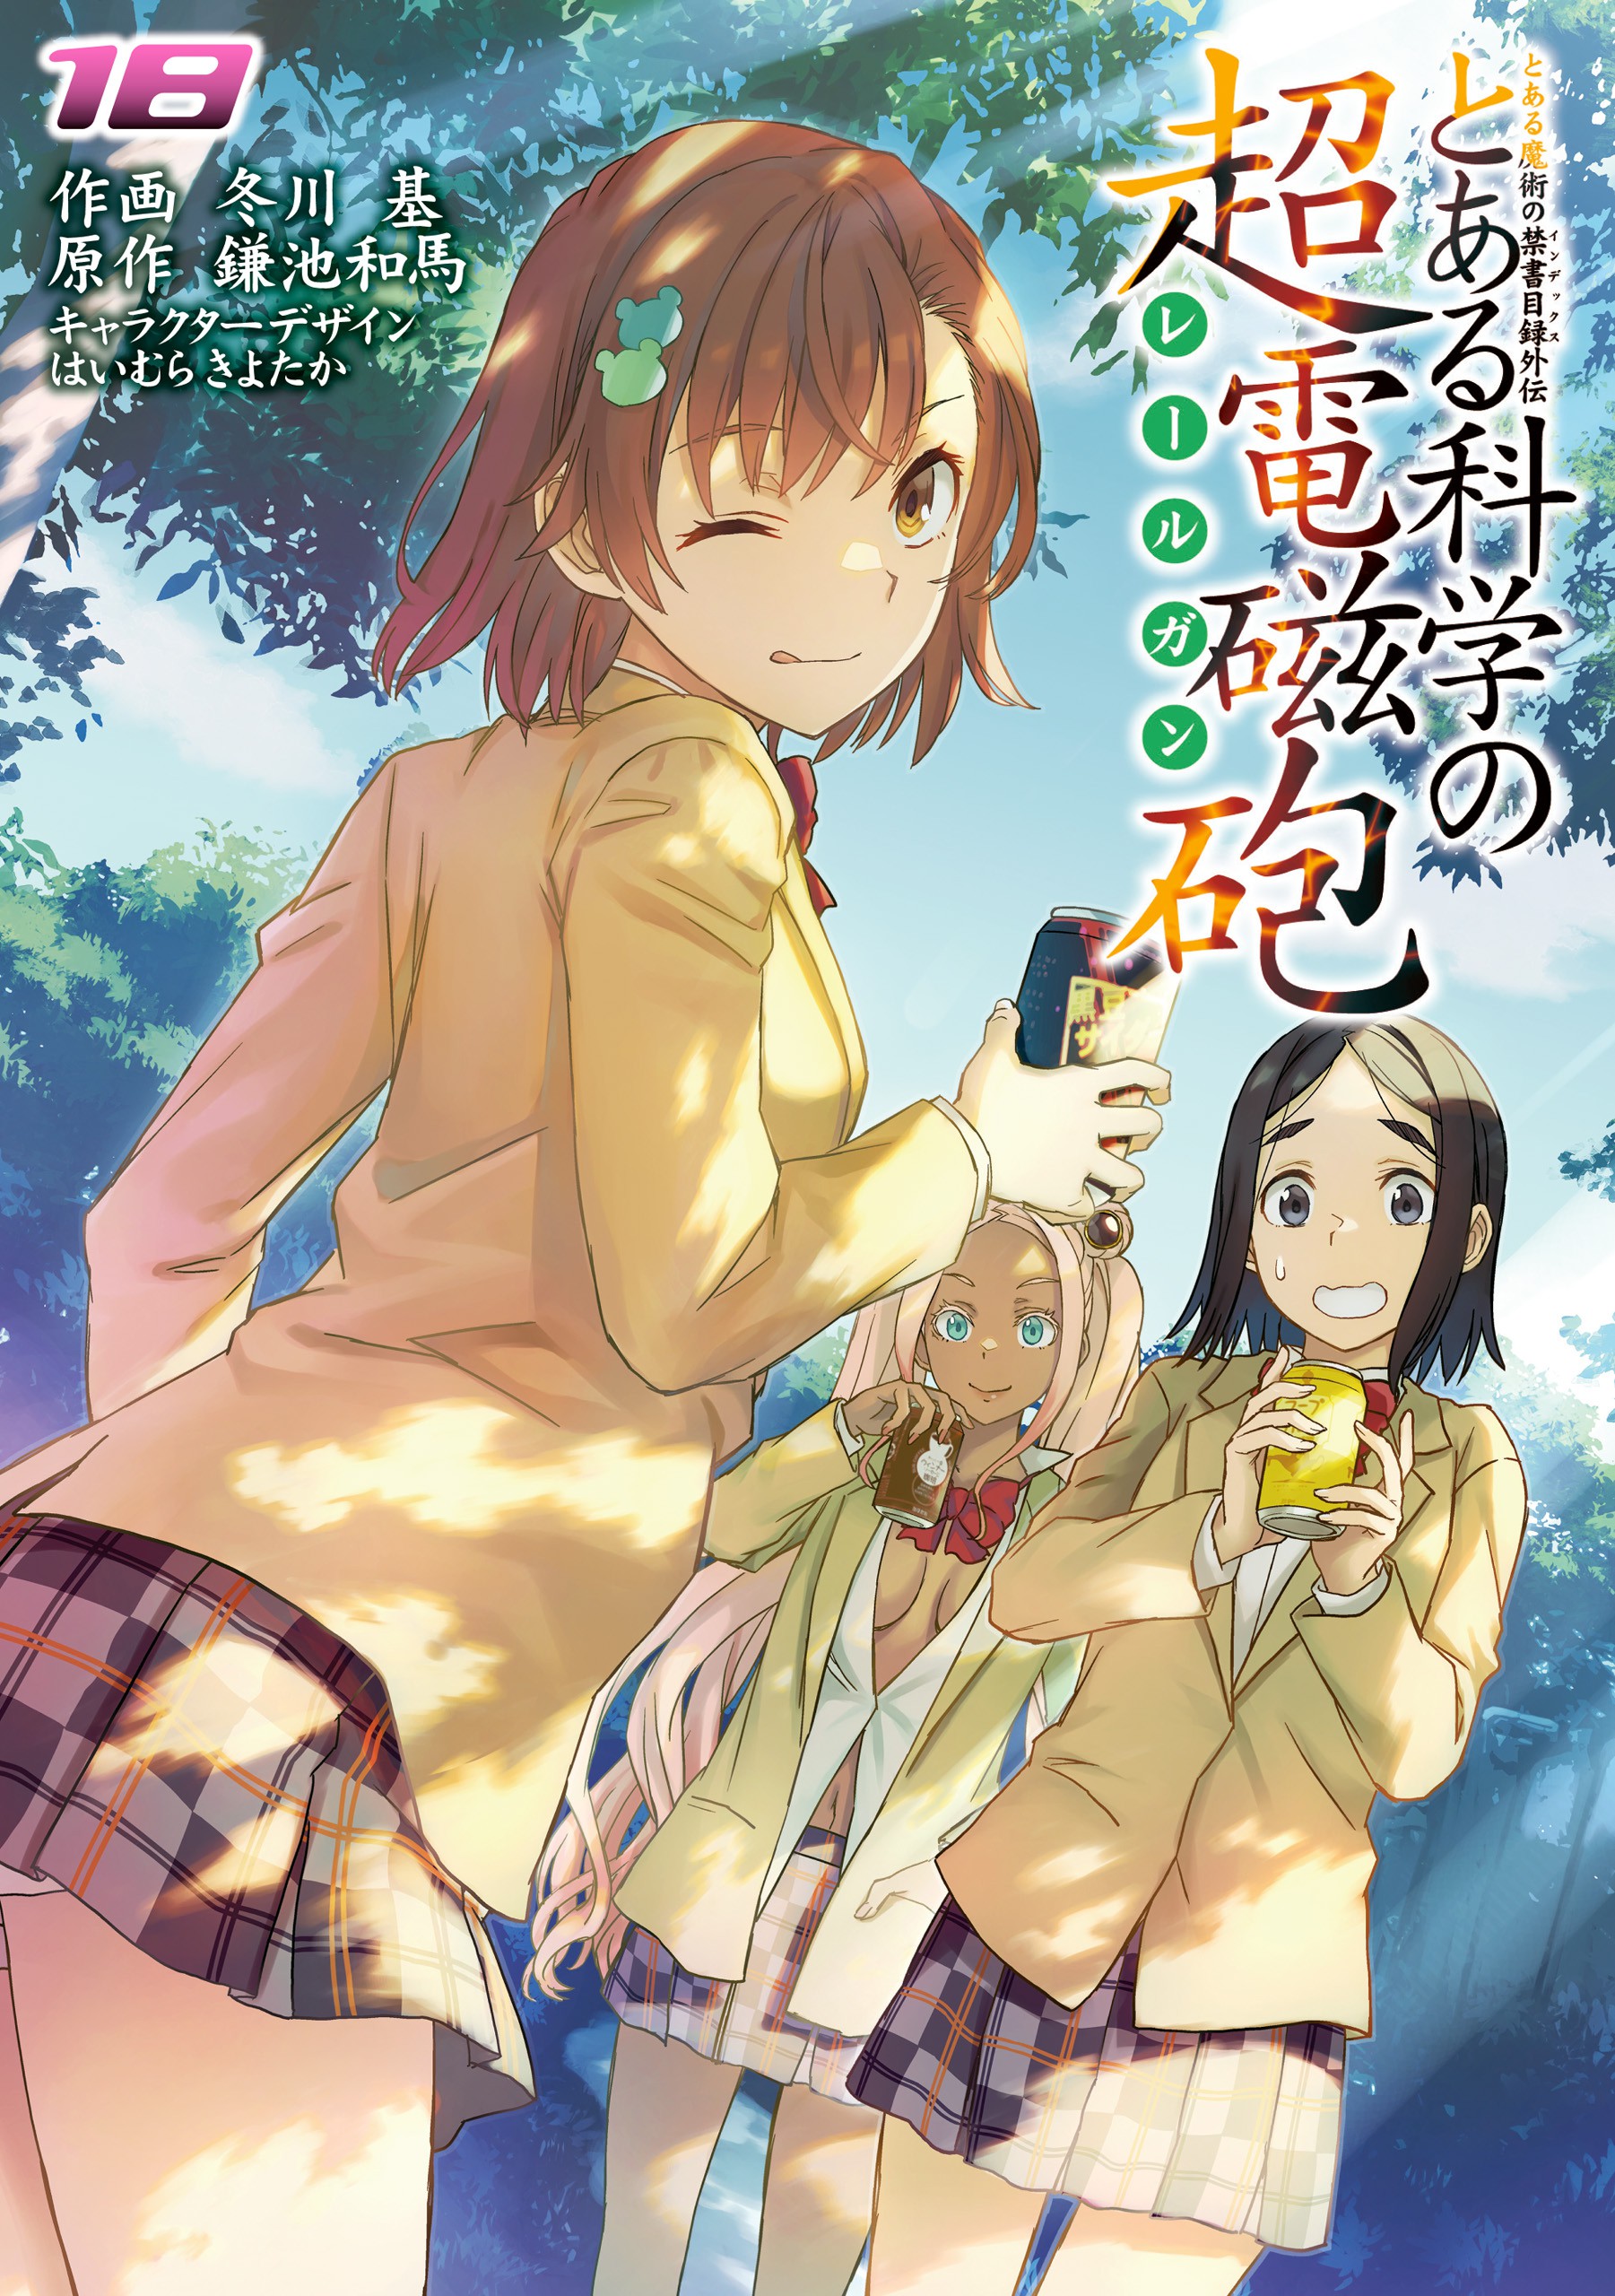 Kagaku Manga Survival, obra de educação virará anime!